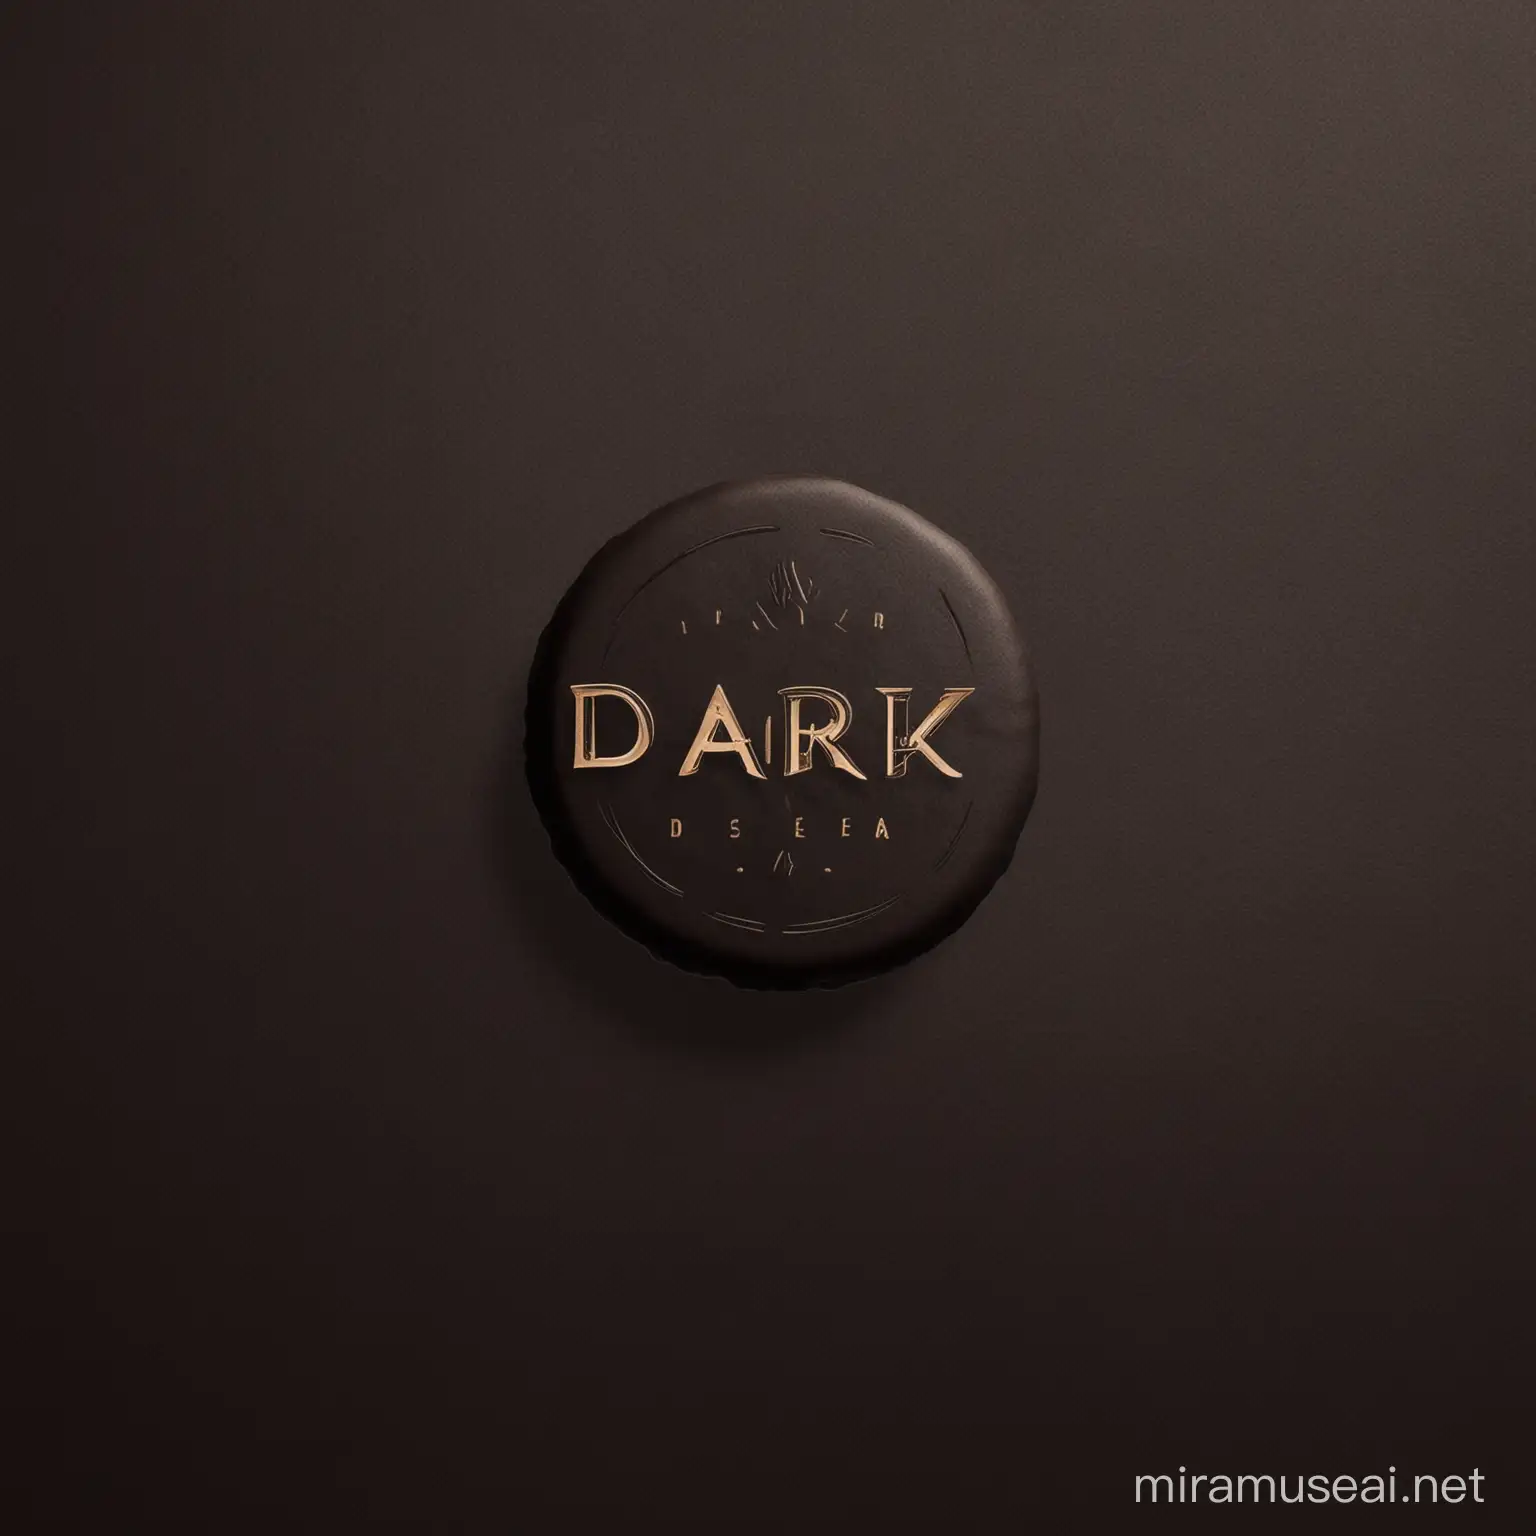 Luxurious Minimalistic Logo Design for Dark Dessert Brand